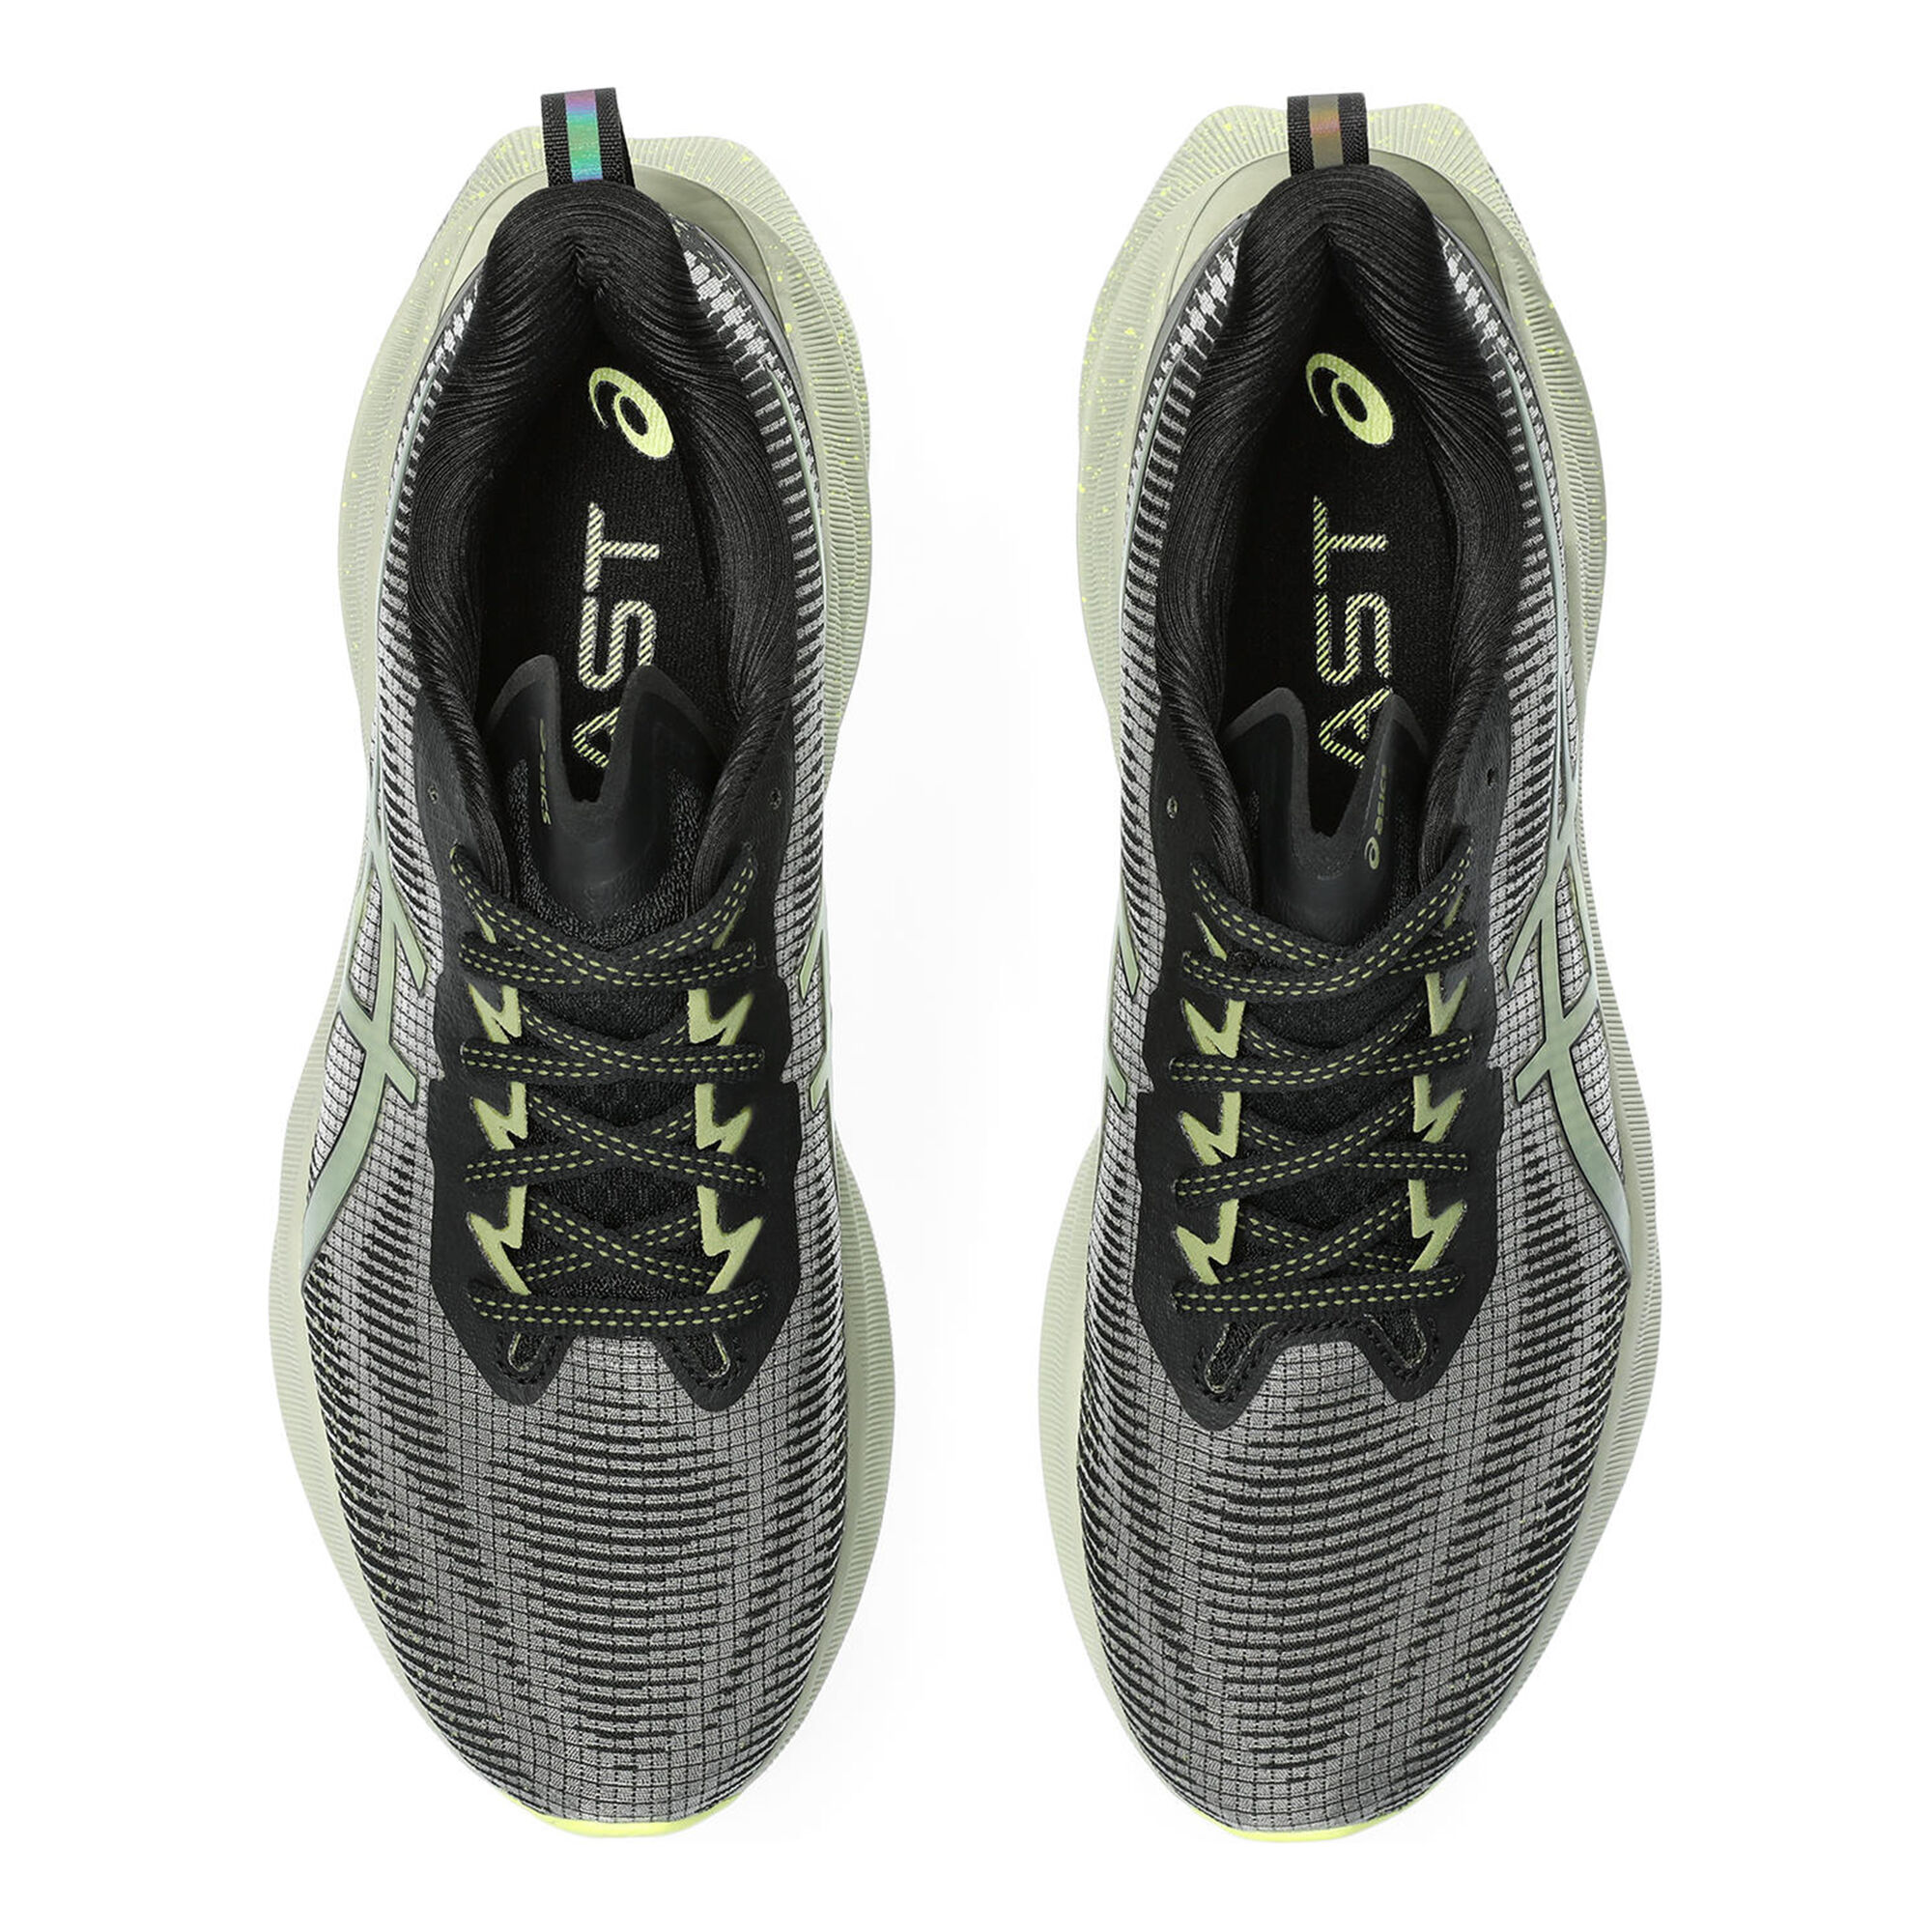 Buy ASICS Mens NOVABLAST 3 - White/Black Running Shoes, UK - 6 at